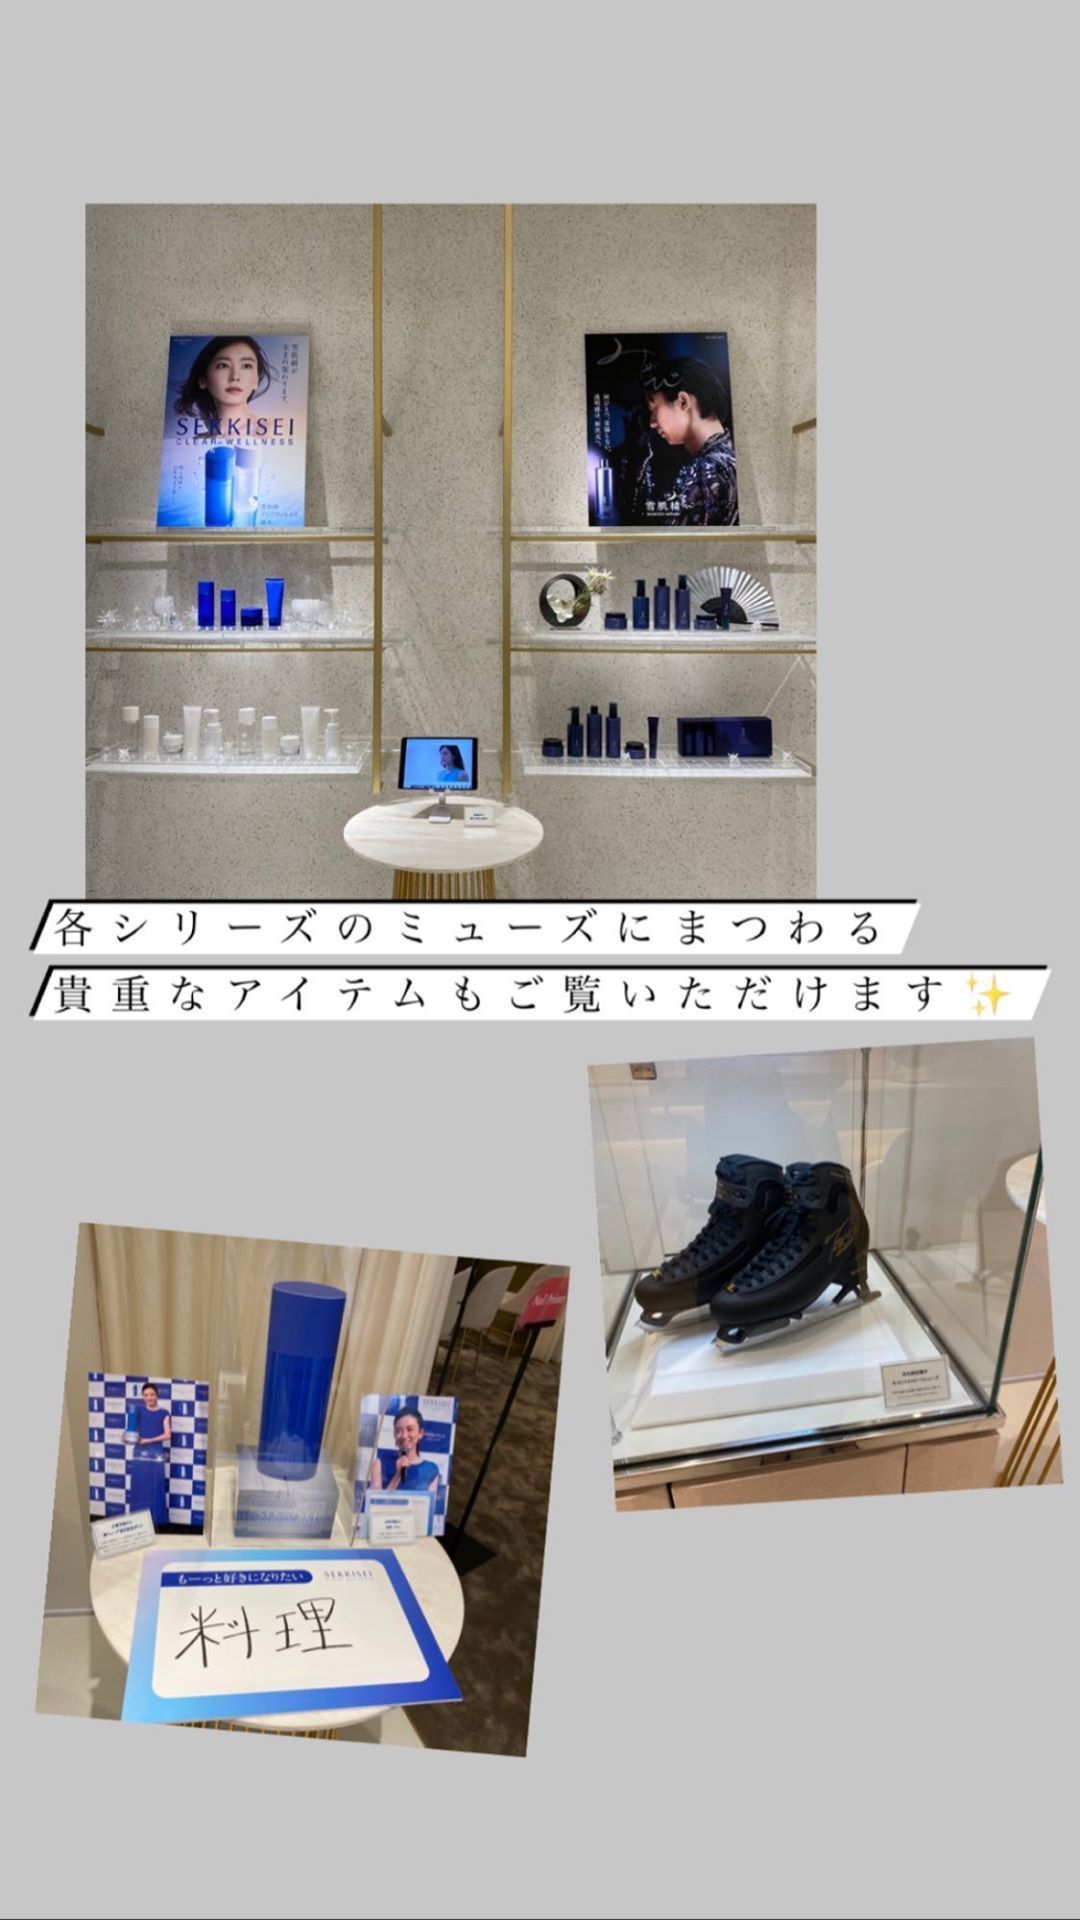 コーセー銀座店で羽生選手のスケート靴が展示 他 羽ばたきと便り 羽生結弦応援ファンブログ